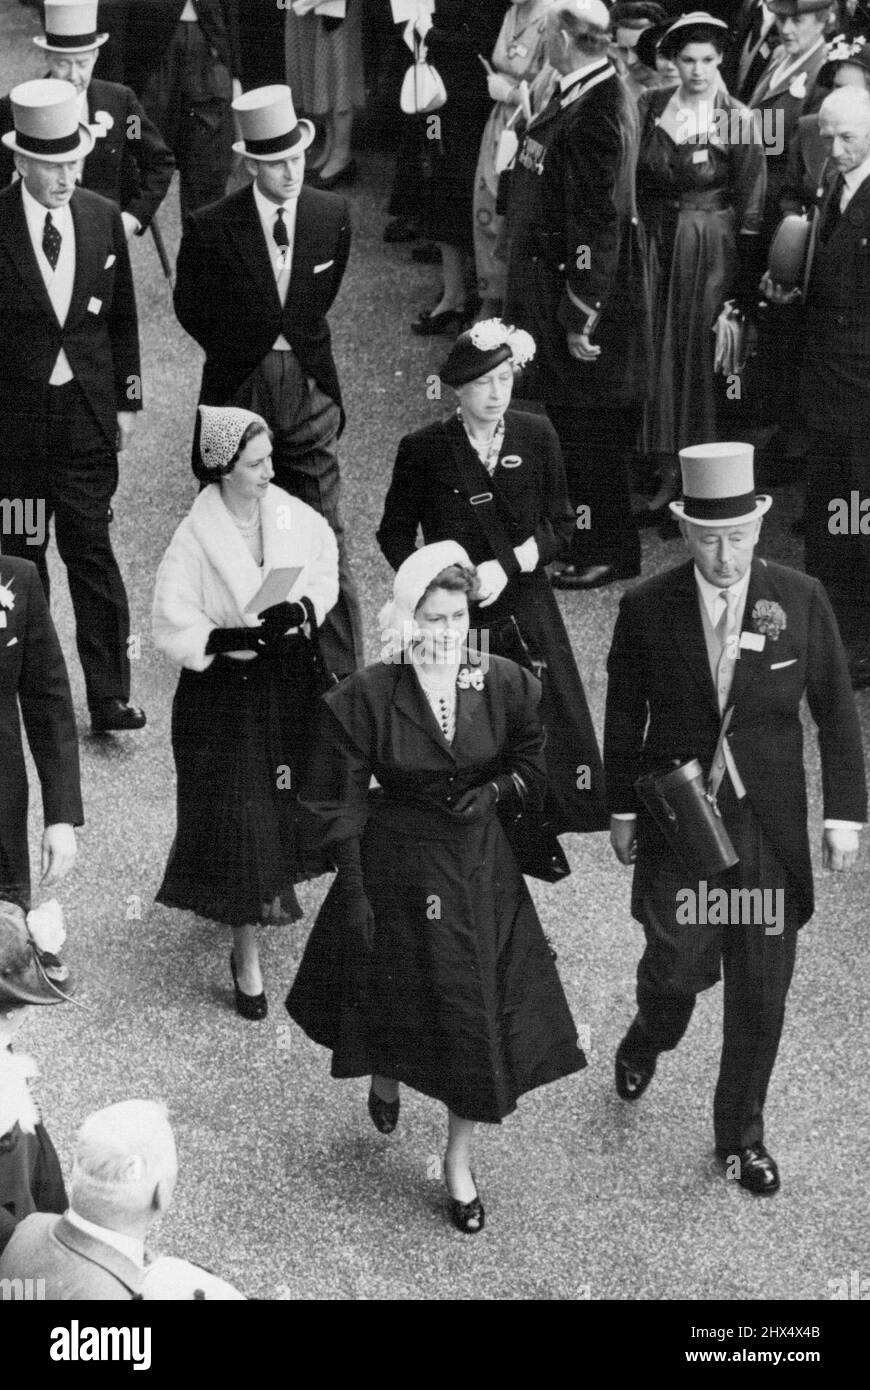 La rencontre royale d'Ascot -- marcher jusqu'à l'embarcadère à la rencontre royale d'Ascot. S.M. la reine Elizabeth mène avec le duc de Norfolk, suivie de la princesse Margaret (à gauche) avec la princesse Royal, et le duc d'Édimbourg (à droite) avec le capitaine C. Moore, le directeur de course Royal. 19 juin 1952. (Photo de Sport & General Press Agency, Limited). Banque D'Images